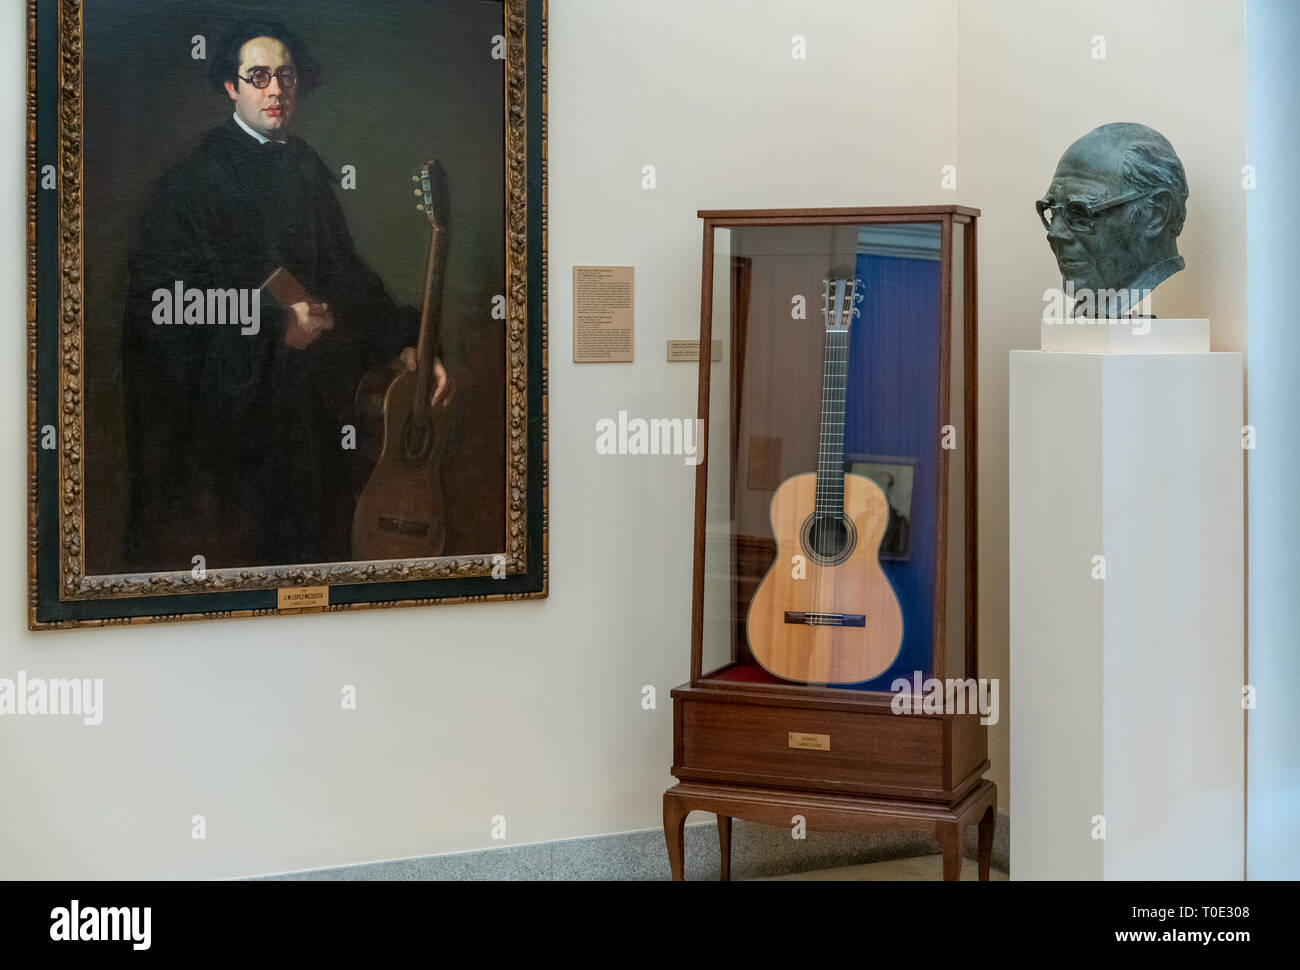 Madrid Königliche Akademie der Schönen Künste Real Academia de Bellas Artes de San Fernando. Zimmer mit Andrés Segovia virtuose Spanische klassischer Gitarrist gewidmet Stockfoto